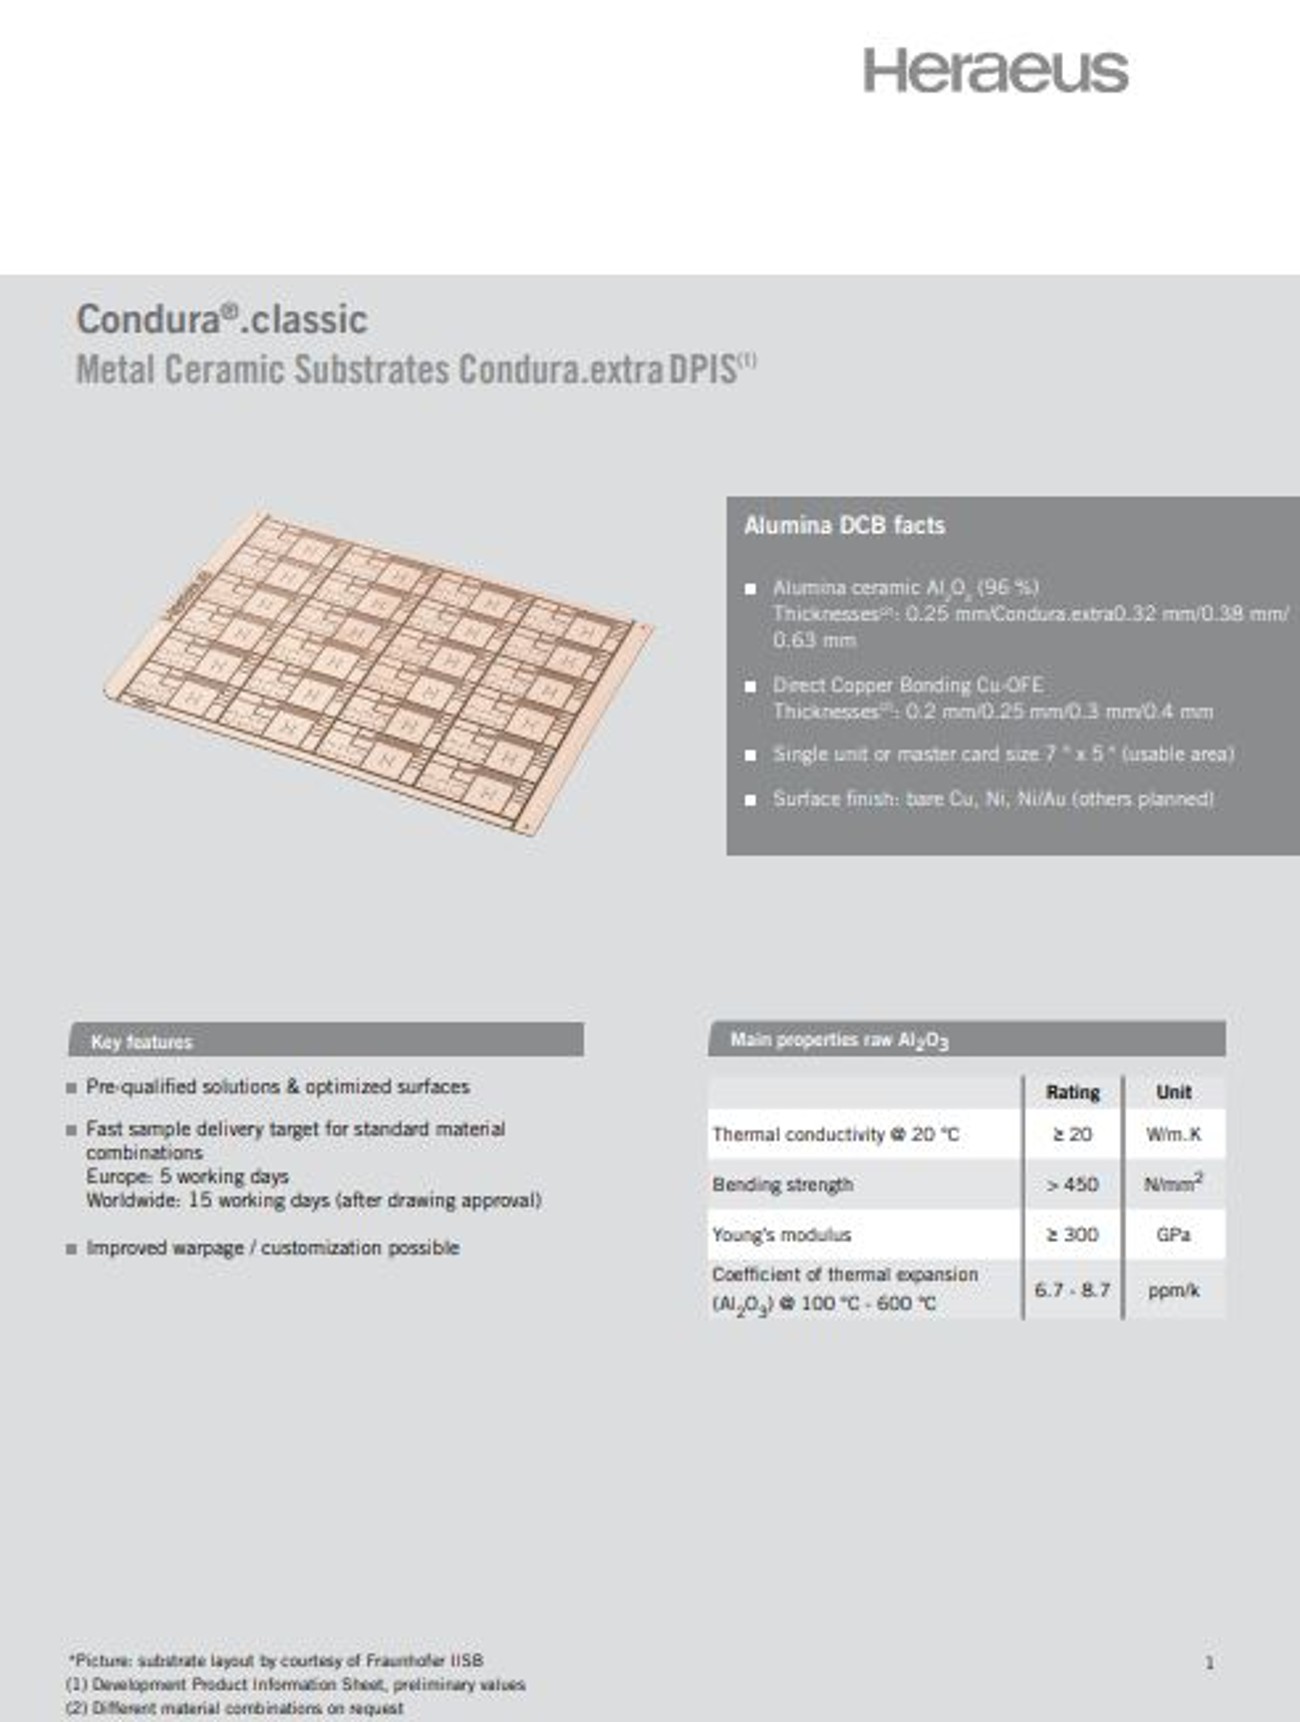 Heraeus Electronics: Condura Classic Metal Ceramic Substrates 